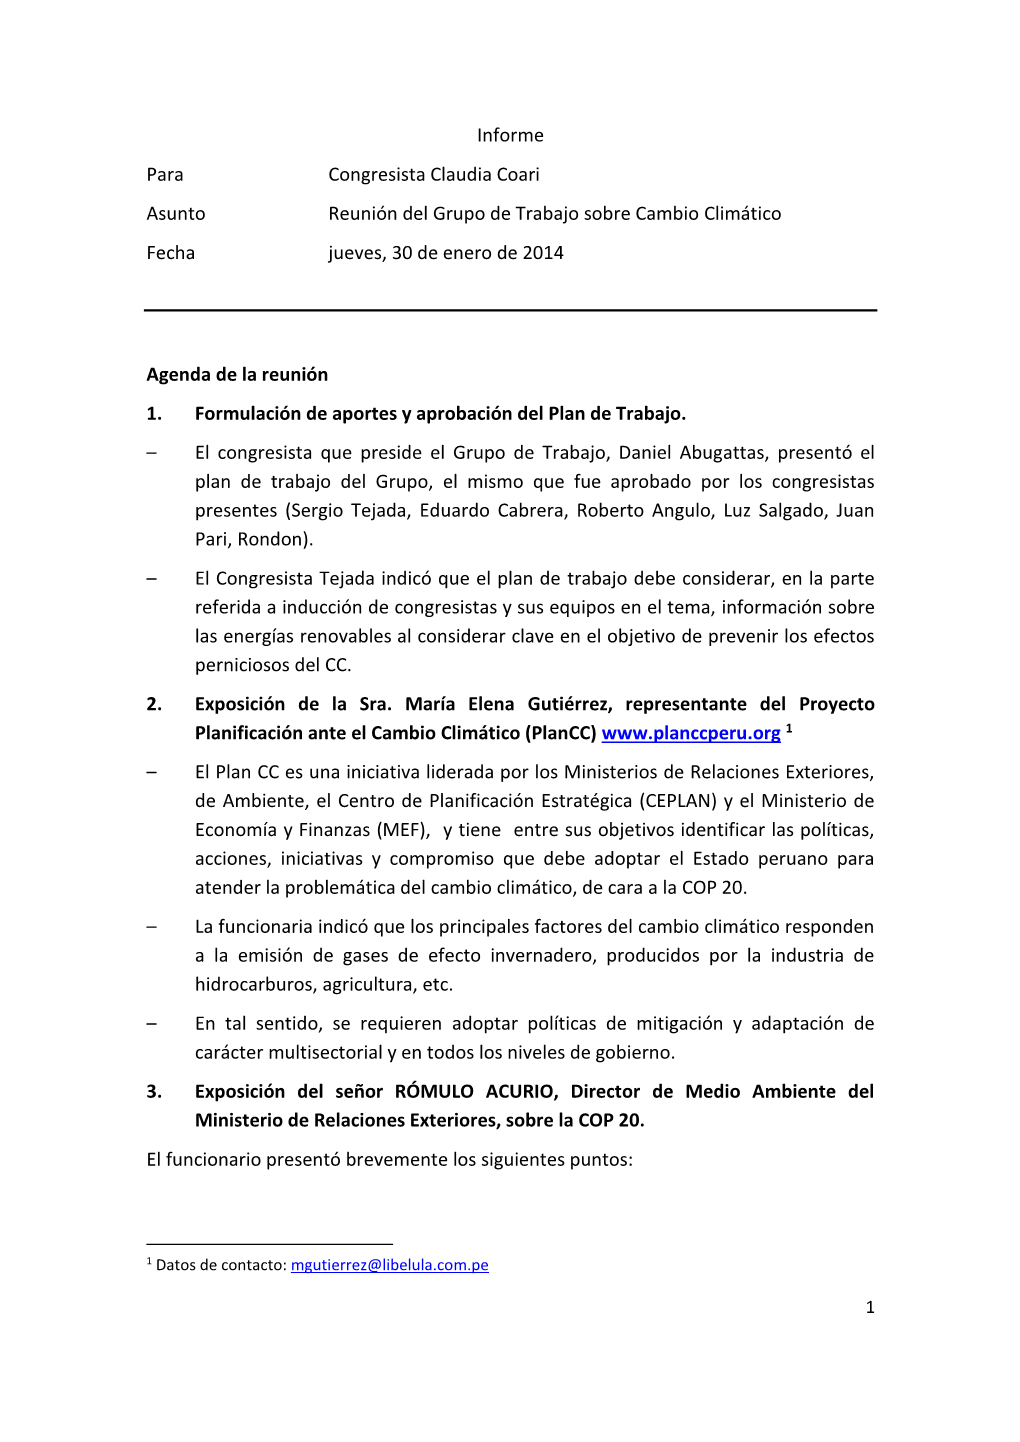 Informe Para Congresista Claudia Coari Asunto Reunión Del Grupo De Trabajo Sobre Cambio Climático Fecha Jueves, 30 De Enero De 2014